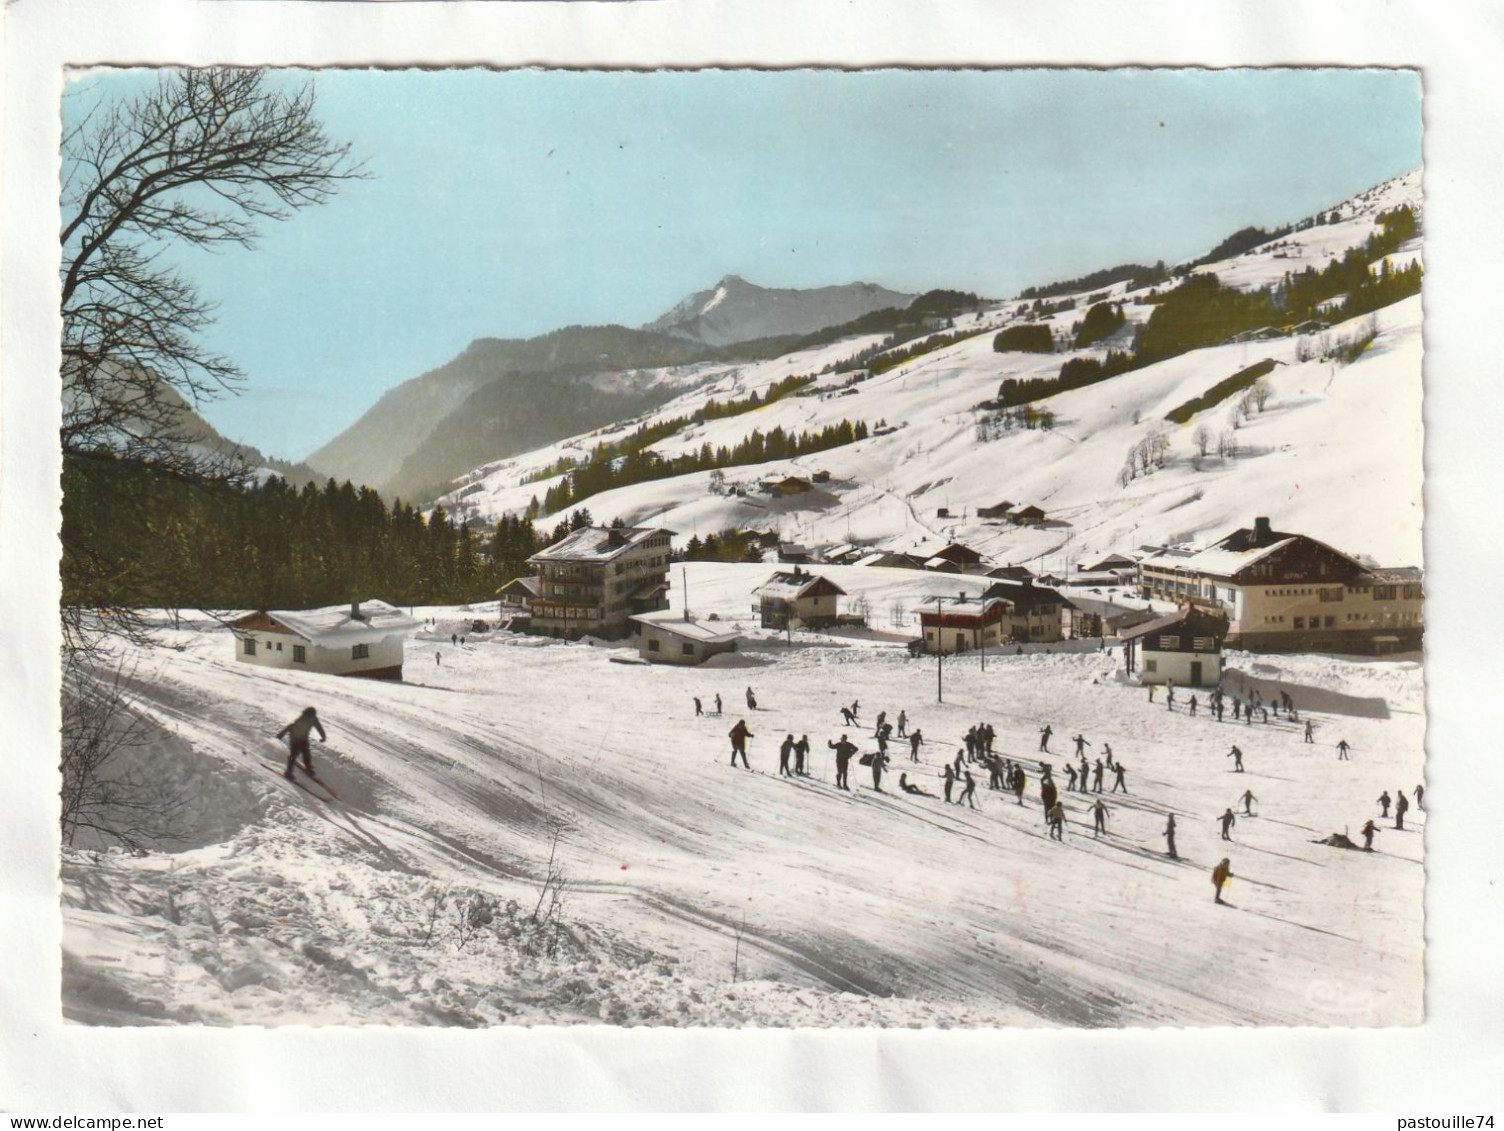 CPM. 15 X 10,5  -   LES  GETS  -  Sports  D'Hiver  -  L'Ecole De Ski - Les Gets